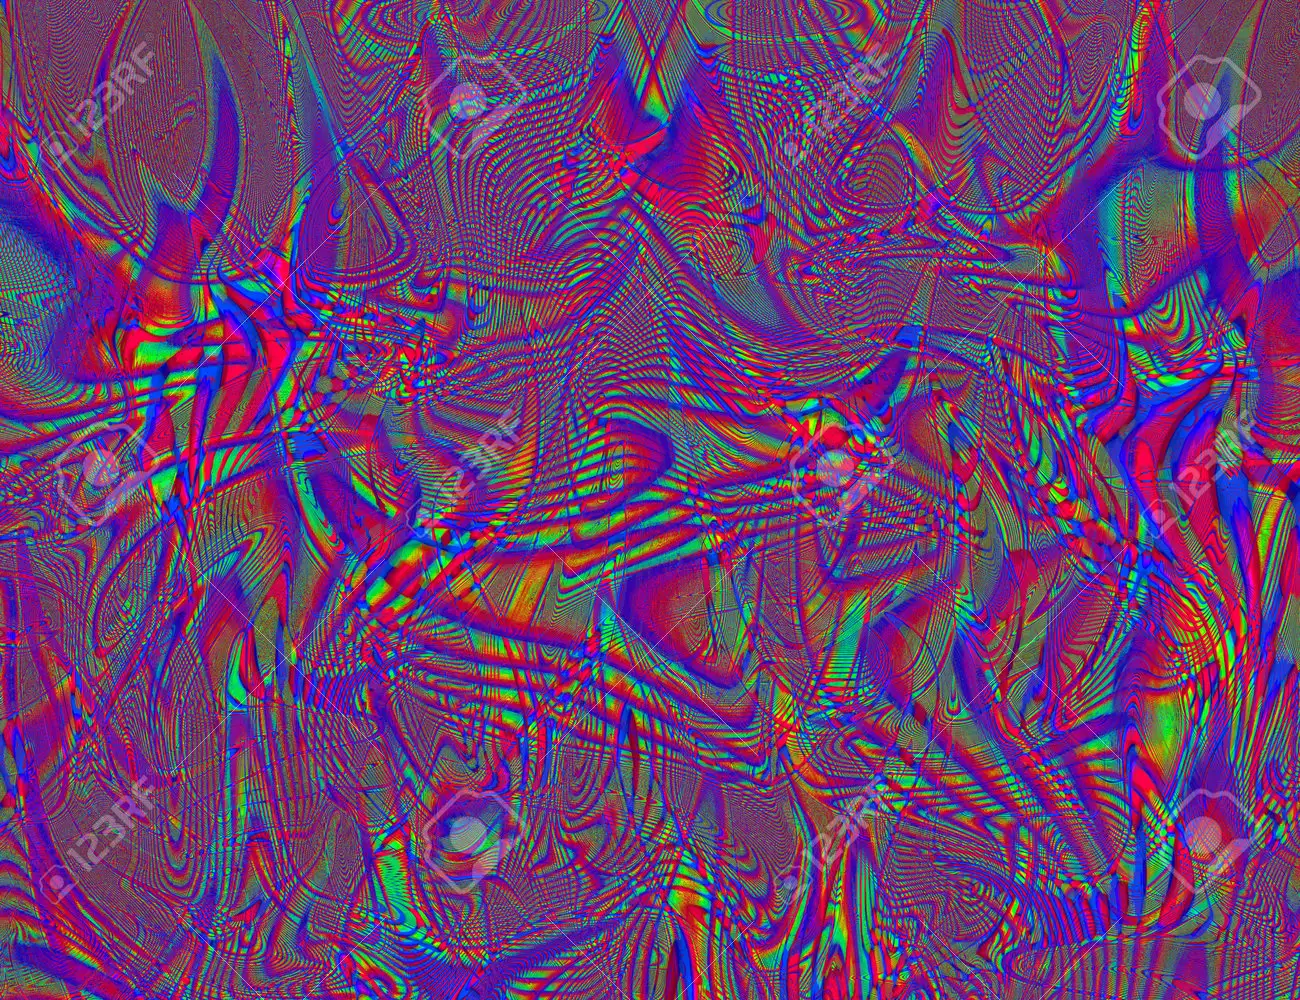 Hippie trippy psychelic rainbow hintergrund lsd bunte tapete abstrakte hypnotische illusion hippie retro texture glitch und disco lizenzfreie fotos bilr und stock fotografie image